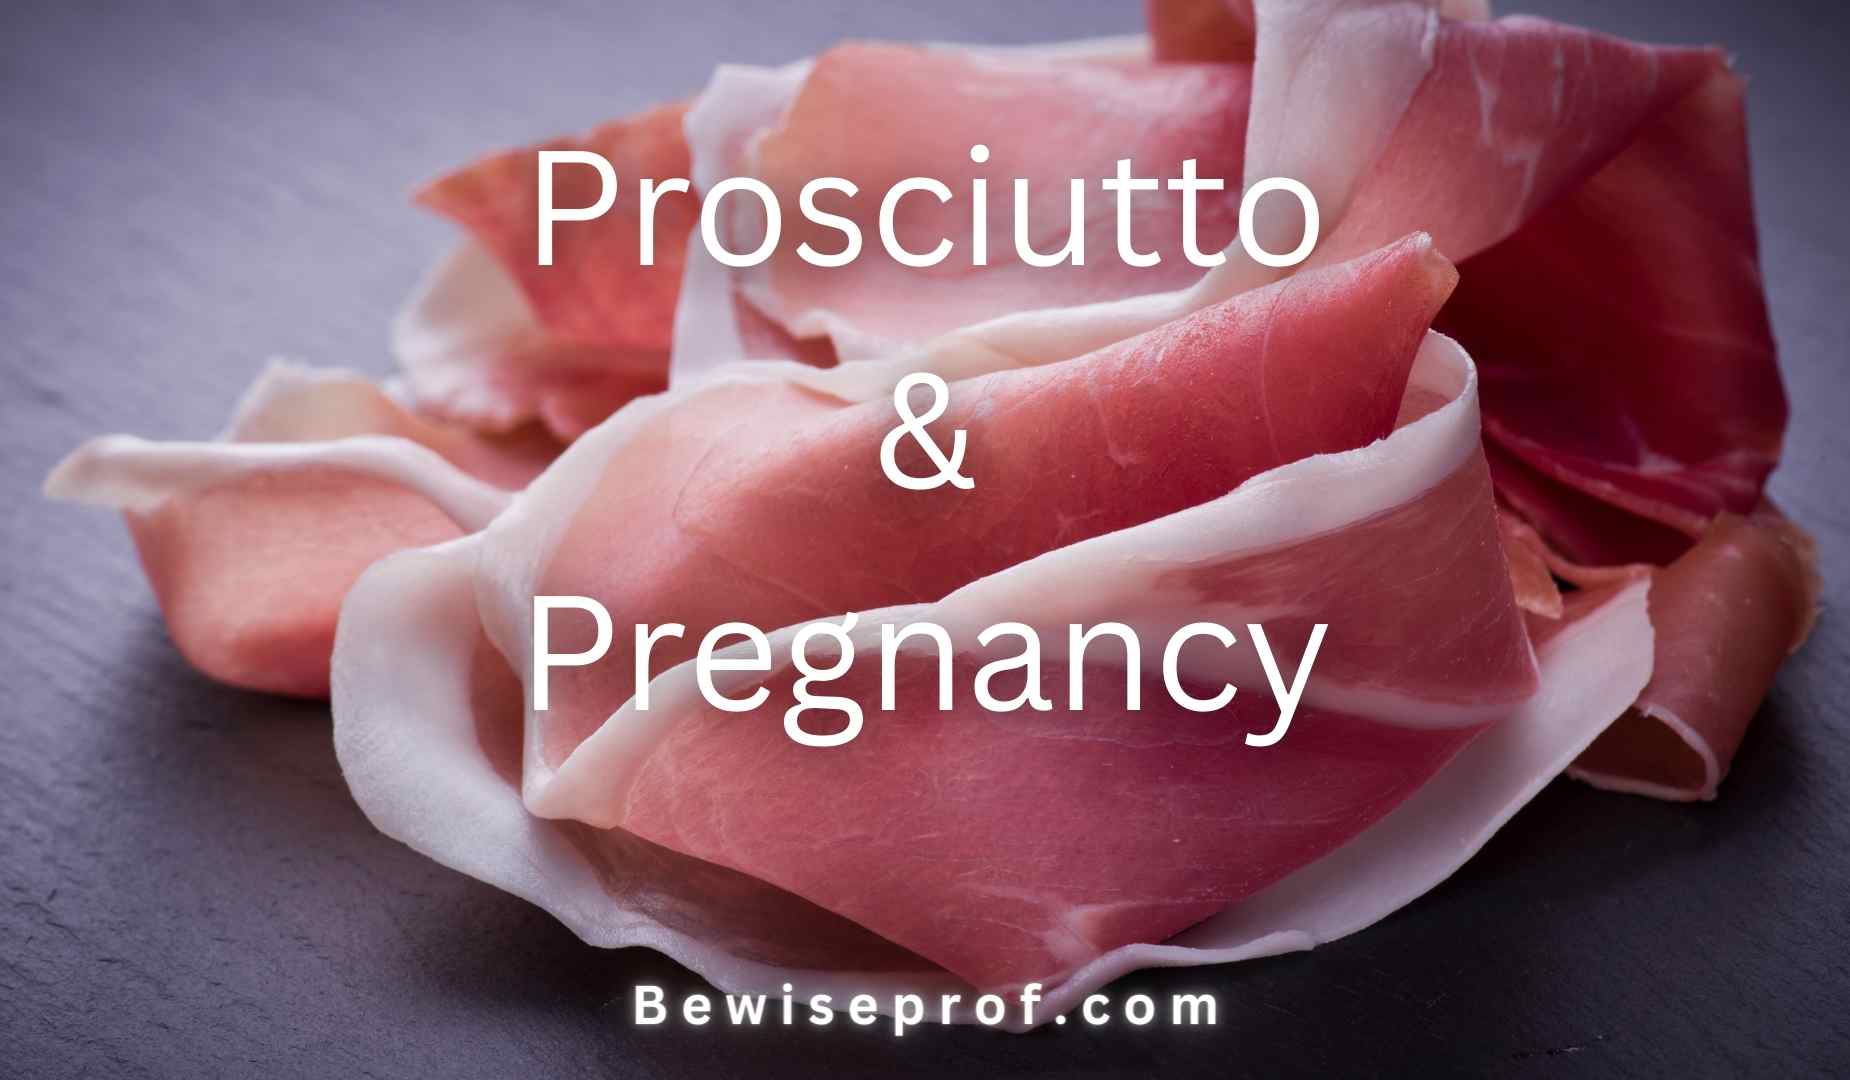 Prosciutto And Pregnancy